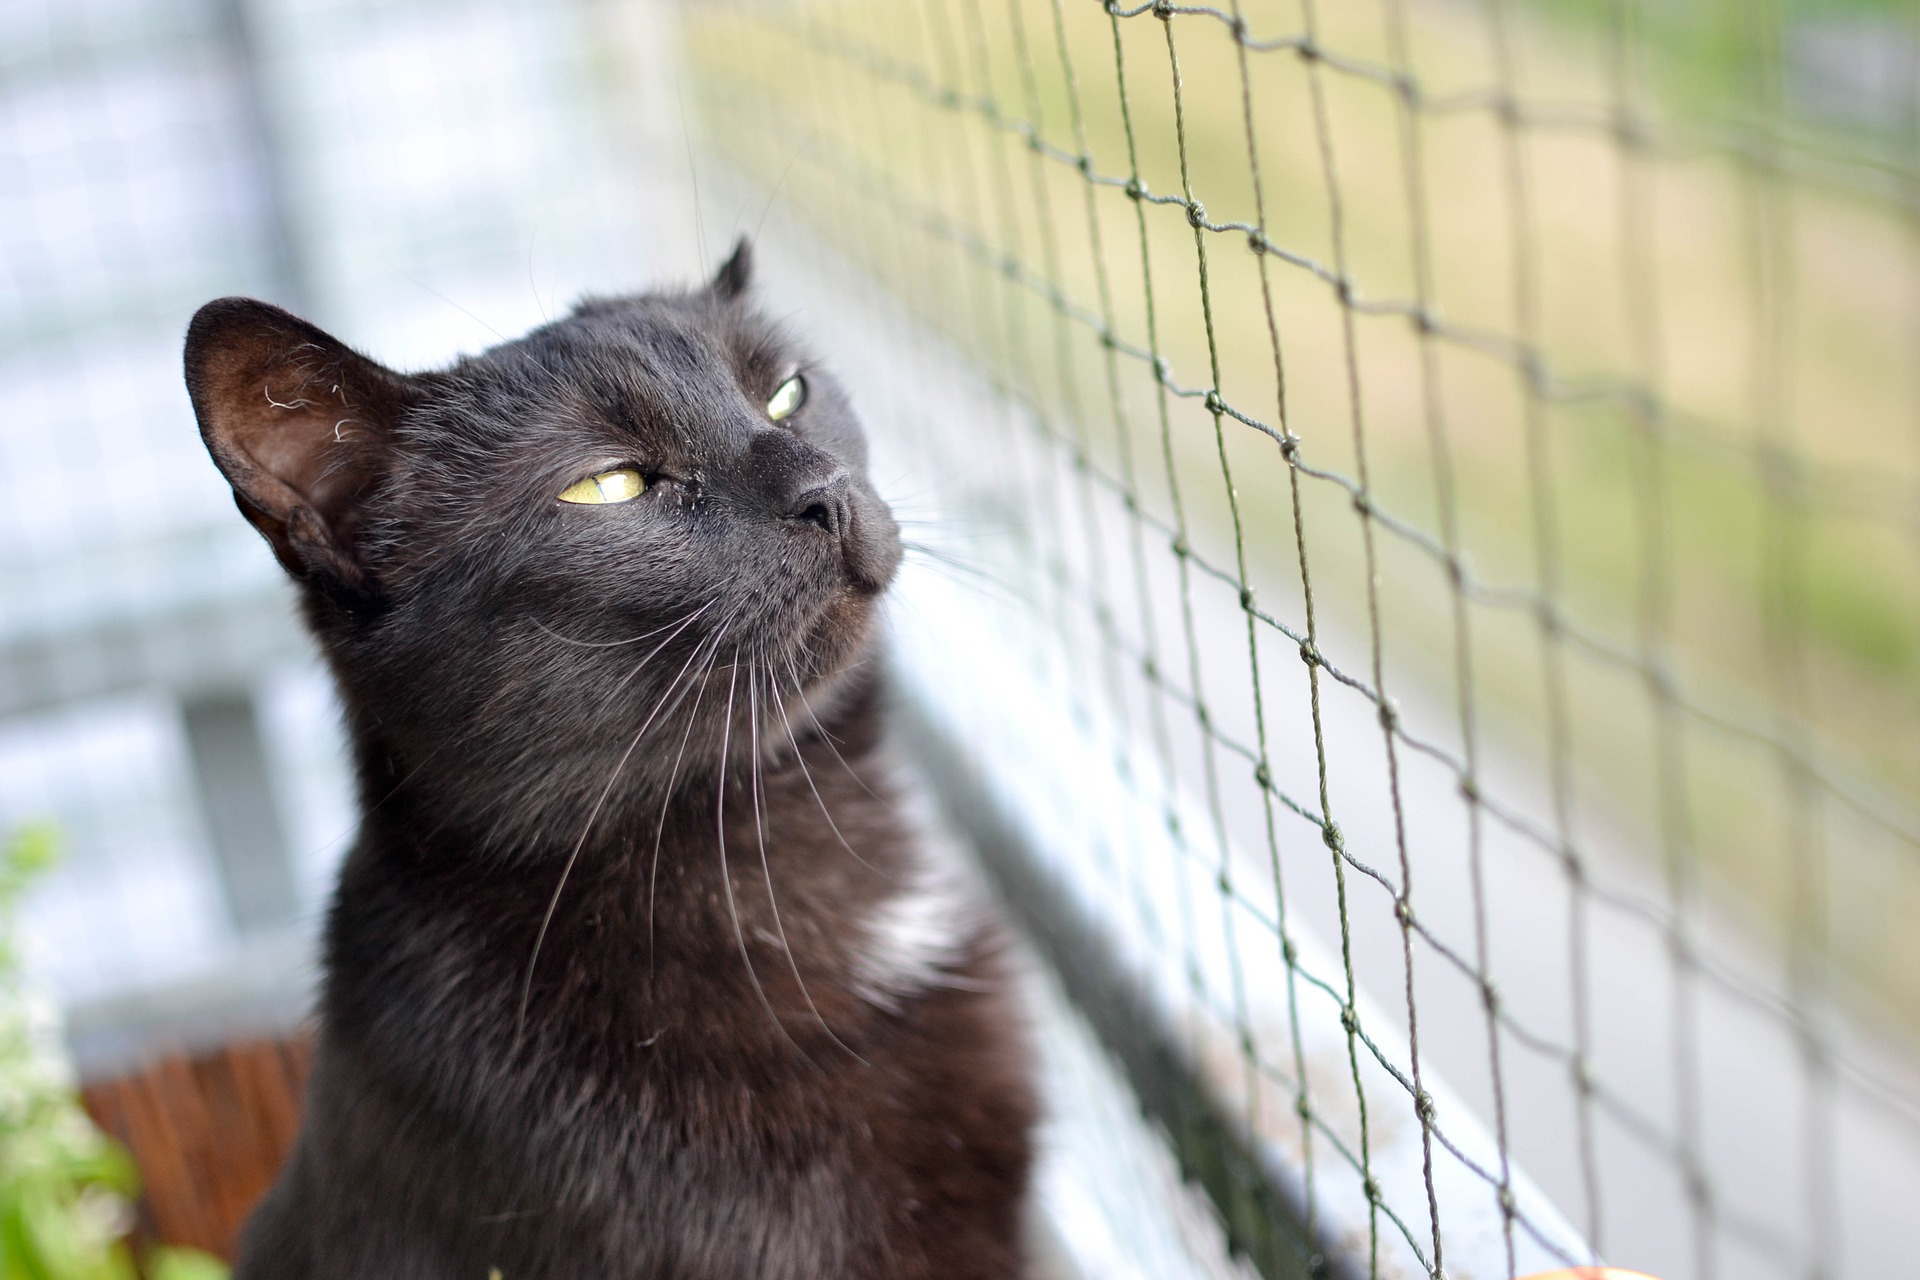 Ein Netz für einen Balkon für eine Katze kann seine Gesundheit und sein Leben schützen.